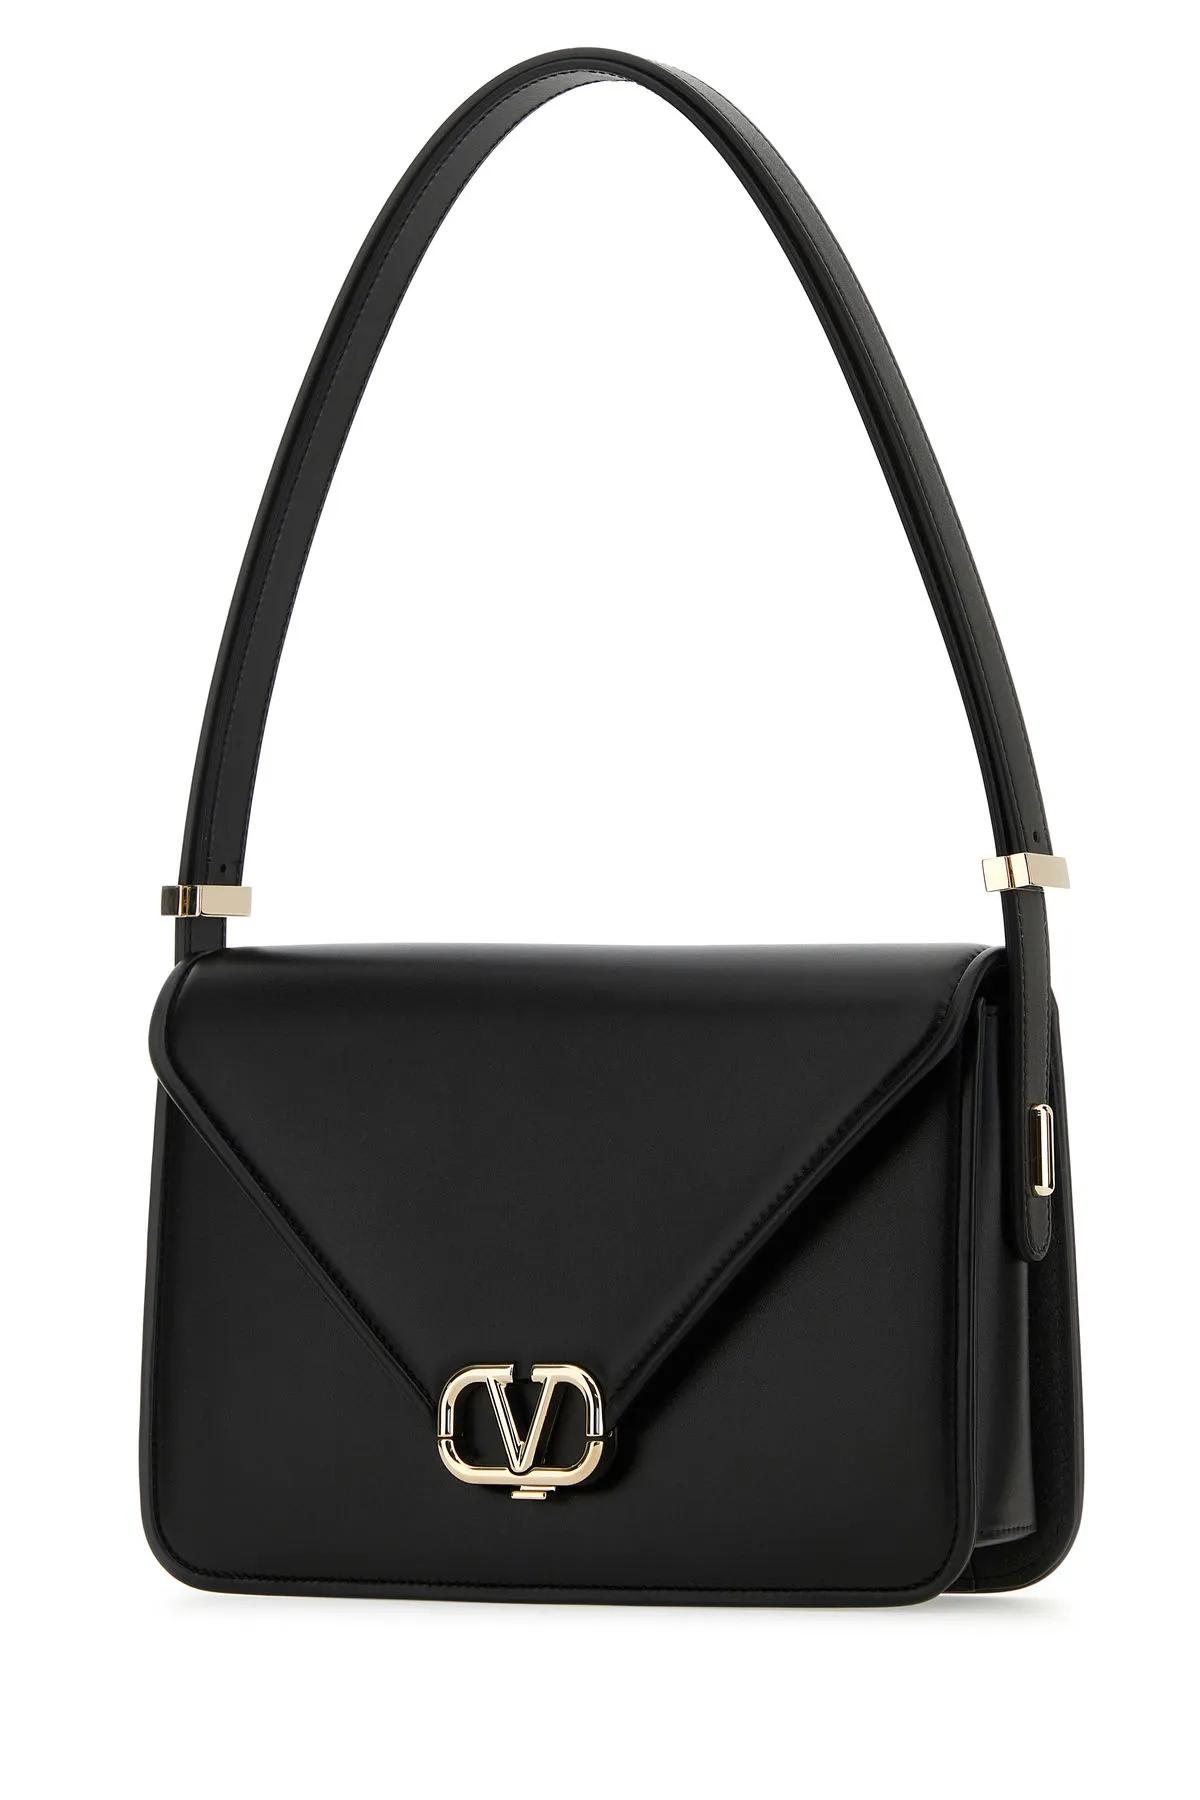 Shop Valentino Black Leather Vlogo Shoulder Bag